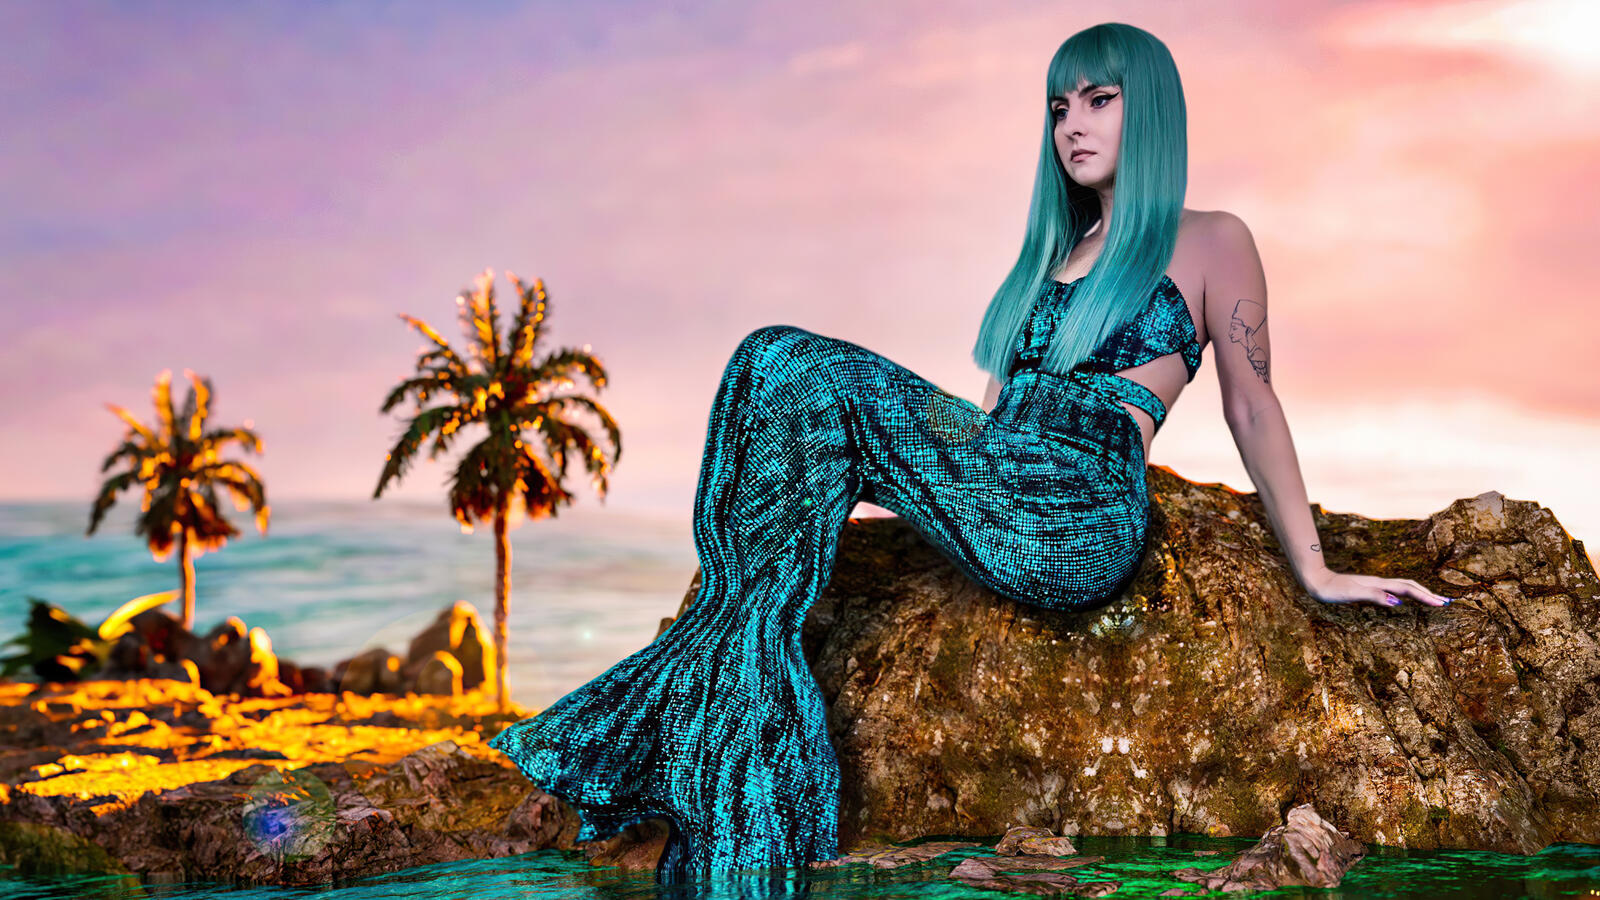 Бесплатное фото Девушка русалка с голубыми волосами сидит на камне